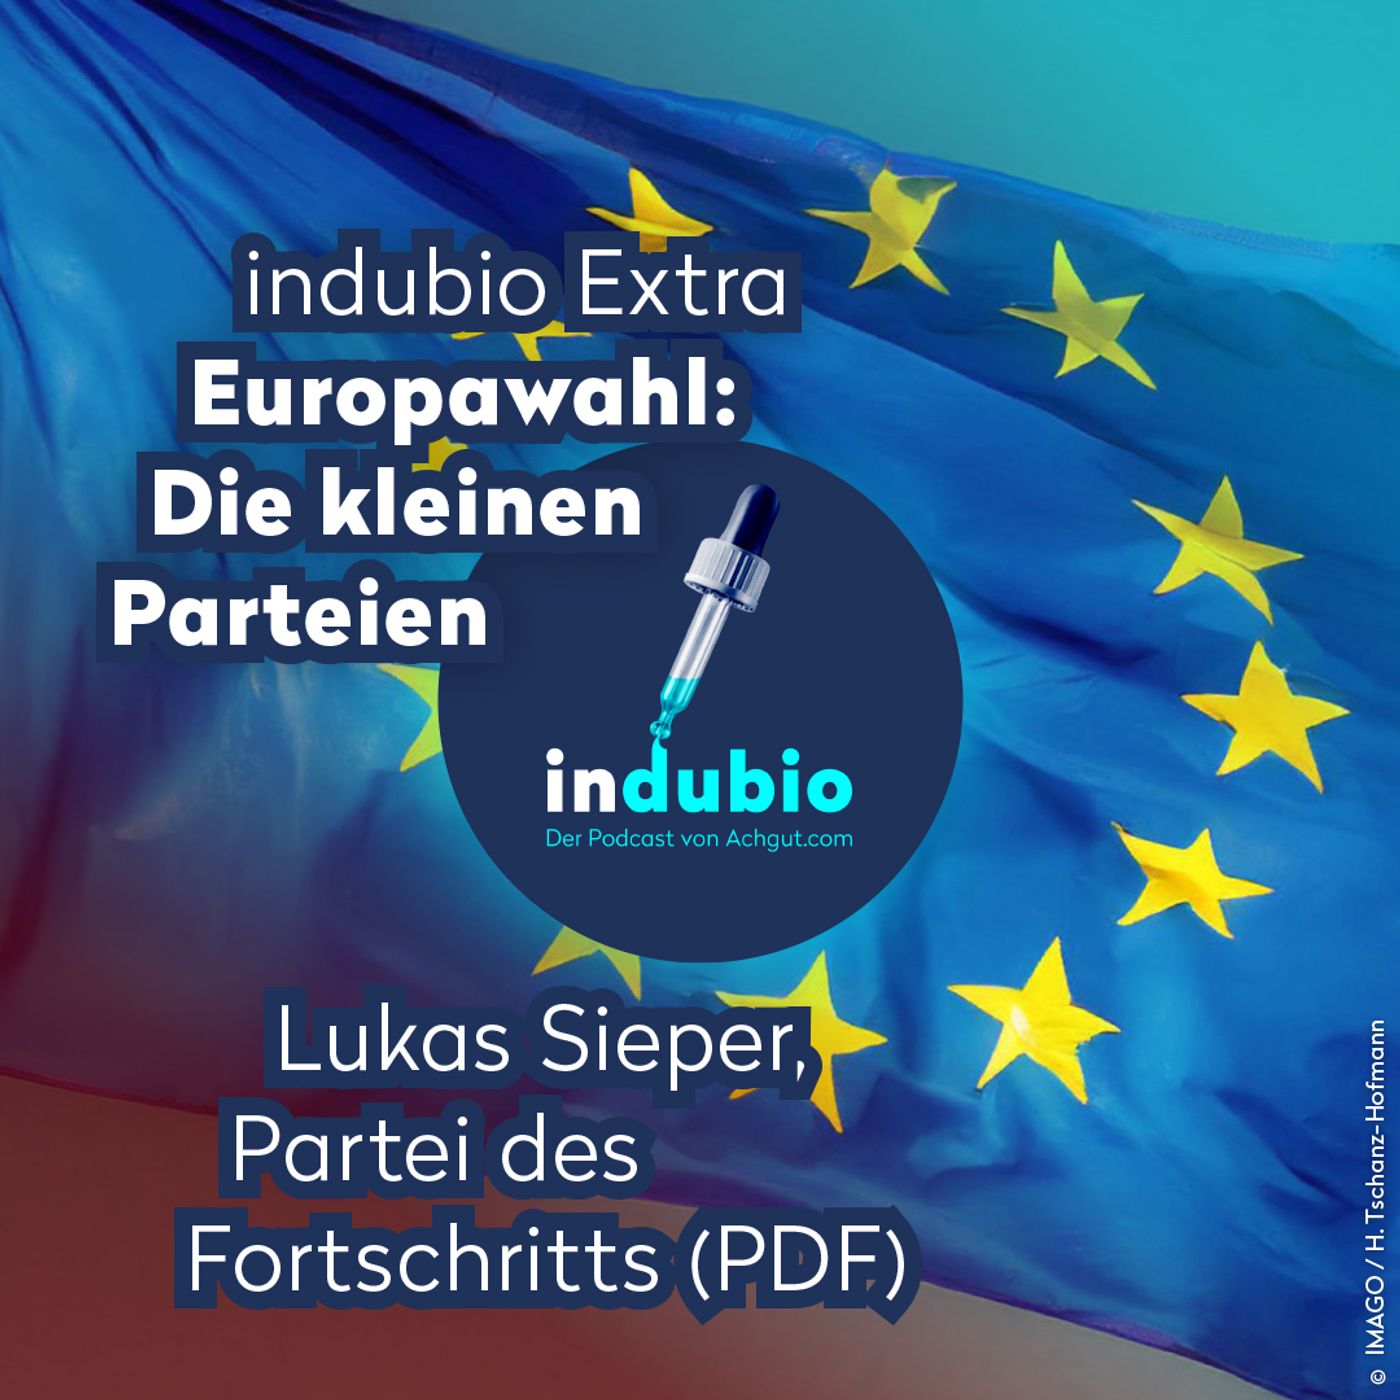 Indubio Extra - Europawahl: Partei des Fortschritts (PDF)